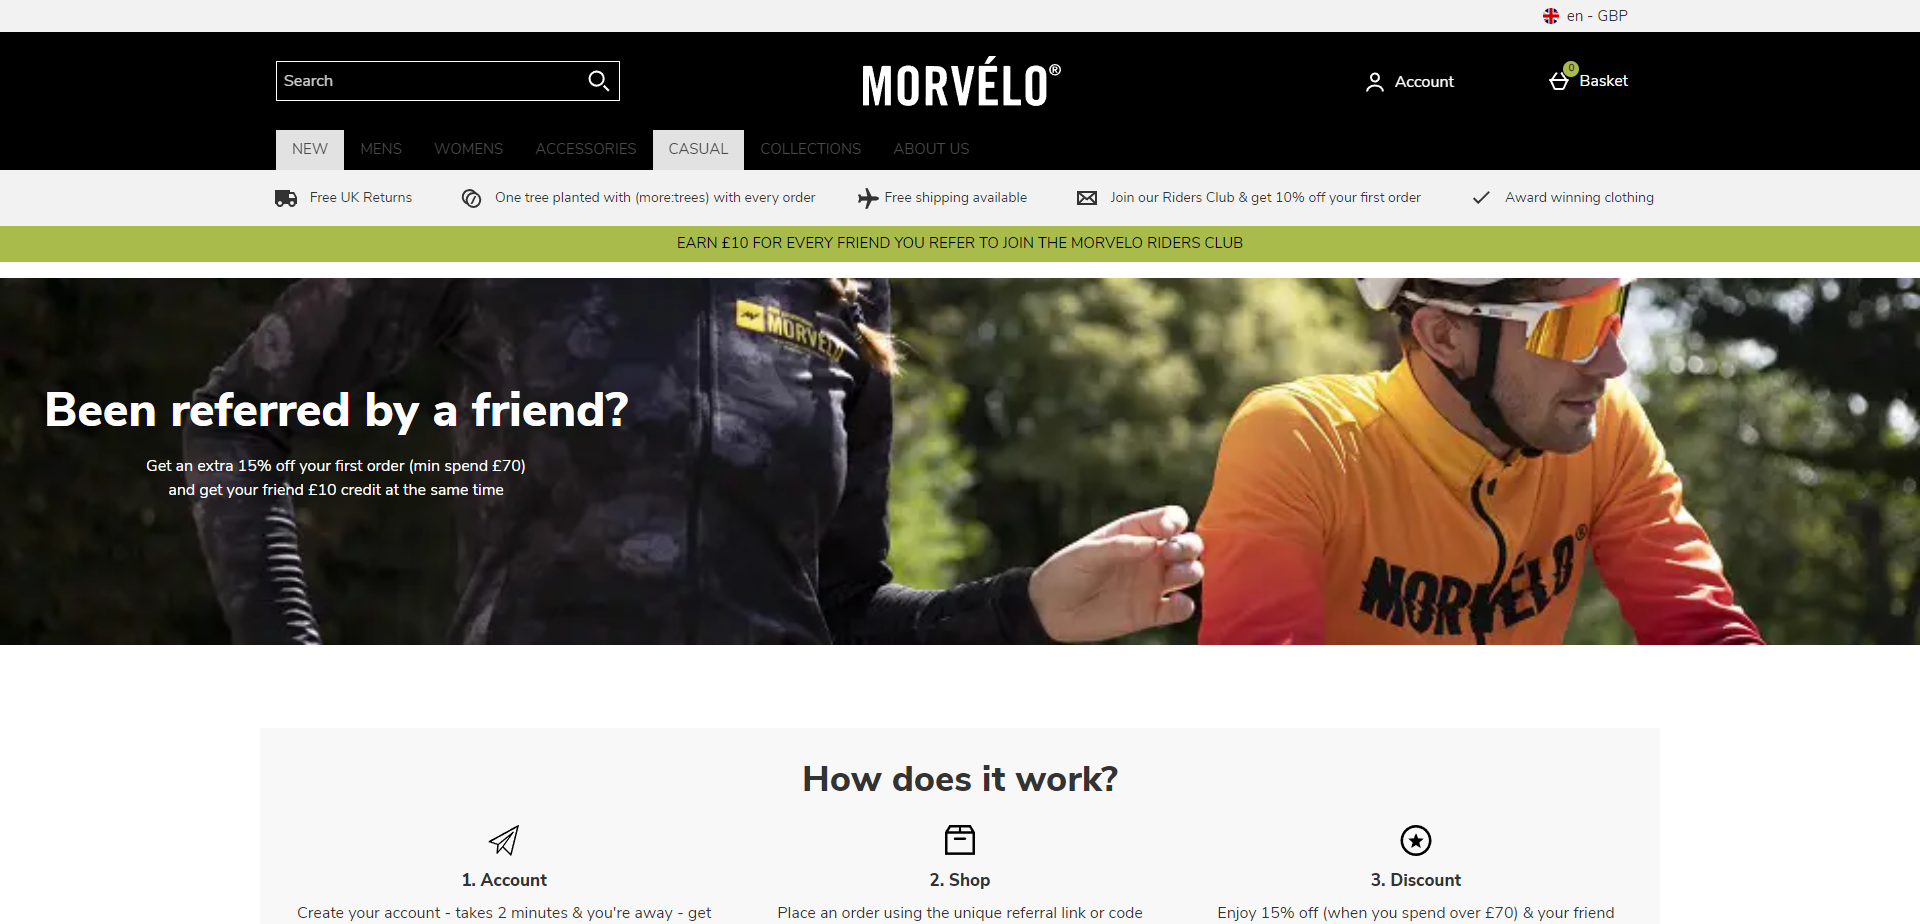 Landing Page for Morvelo